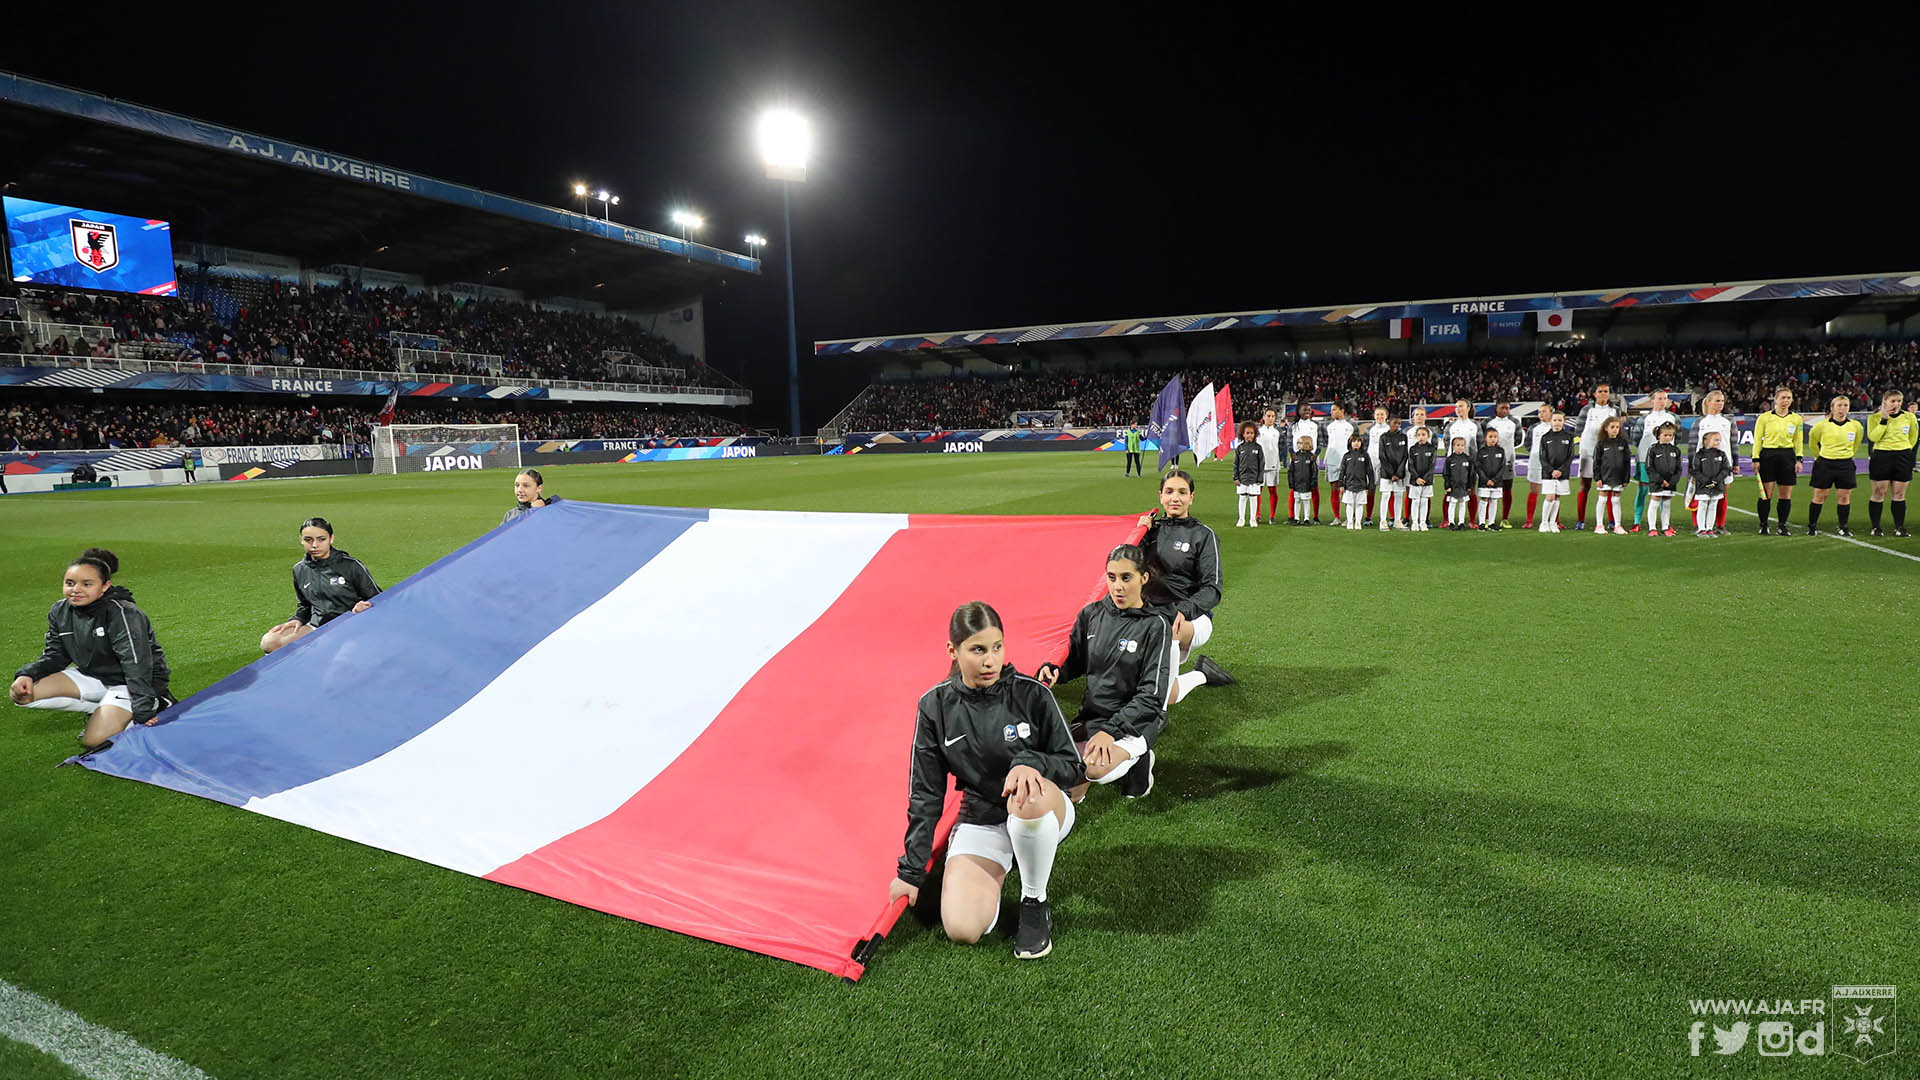 La France disputera trois matchs en mars sur son sol (photo AJA)